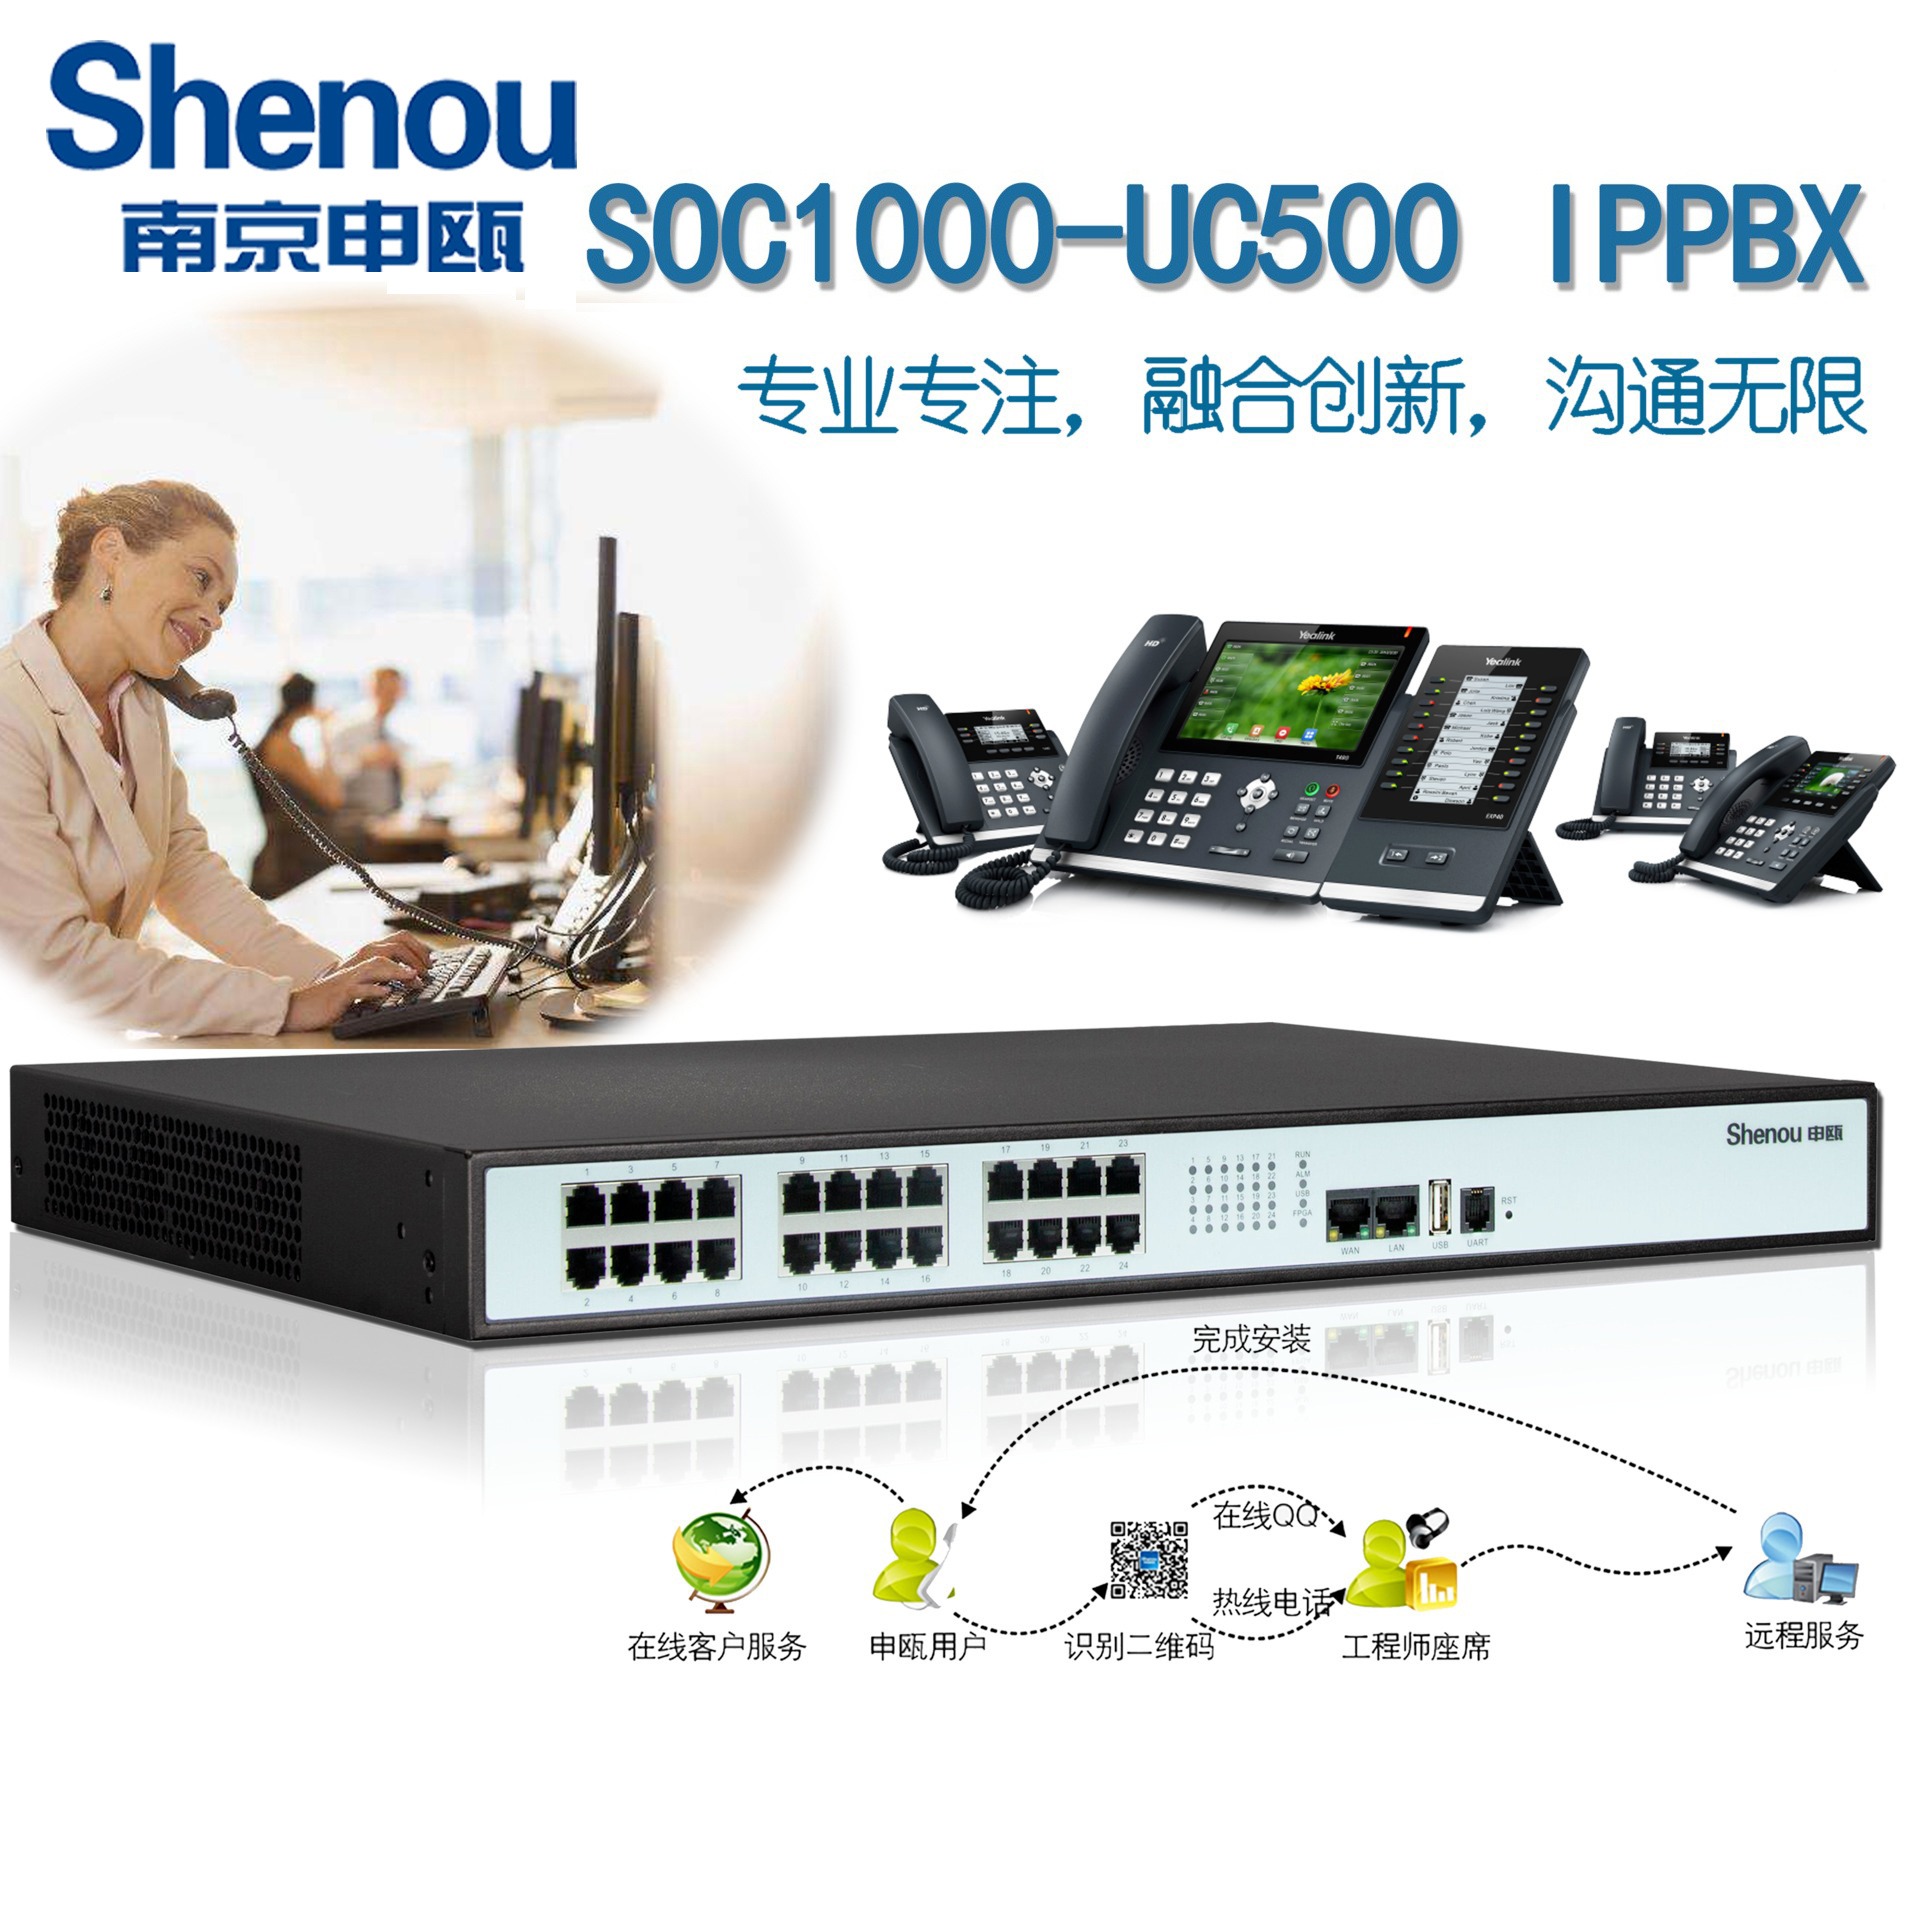 兰州申瓯IPPBX软交换系统SOC1000-UC500程控数字电话交换机